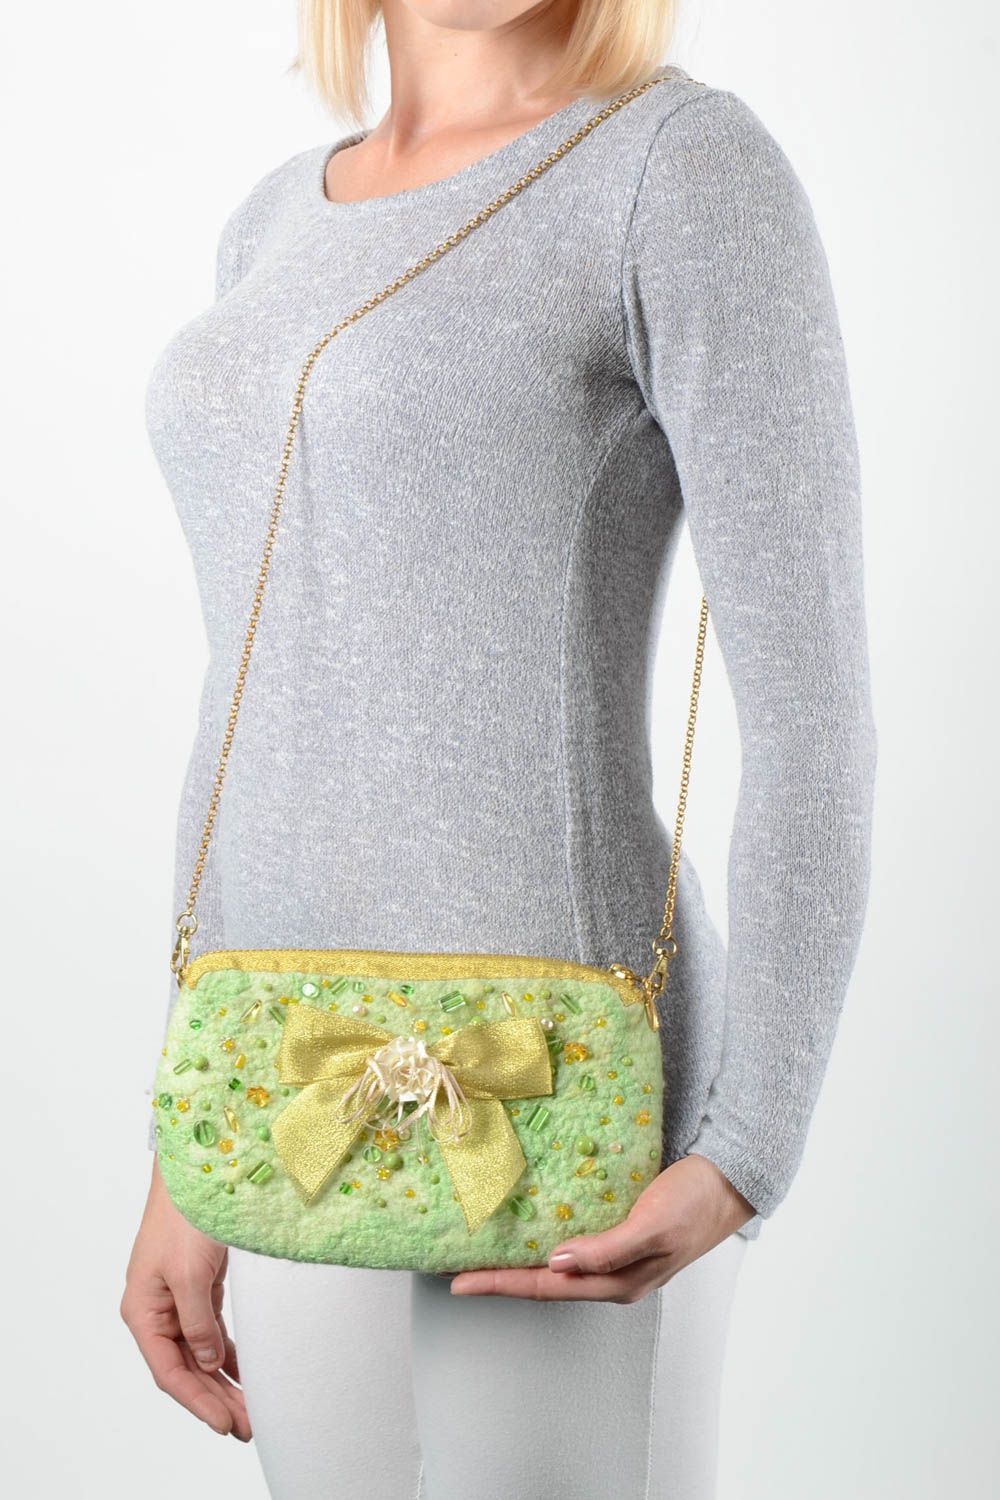 Модная сумка ручной работы женская сумка авторский аксессуар сумка из шерсти фото 1